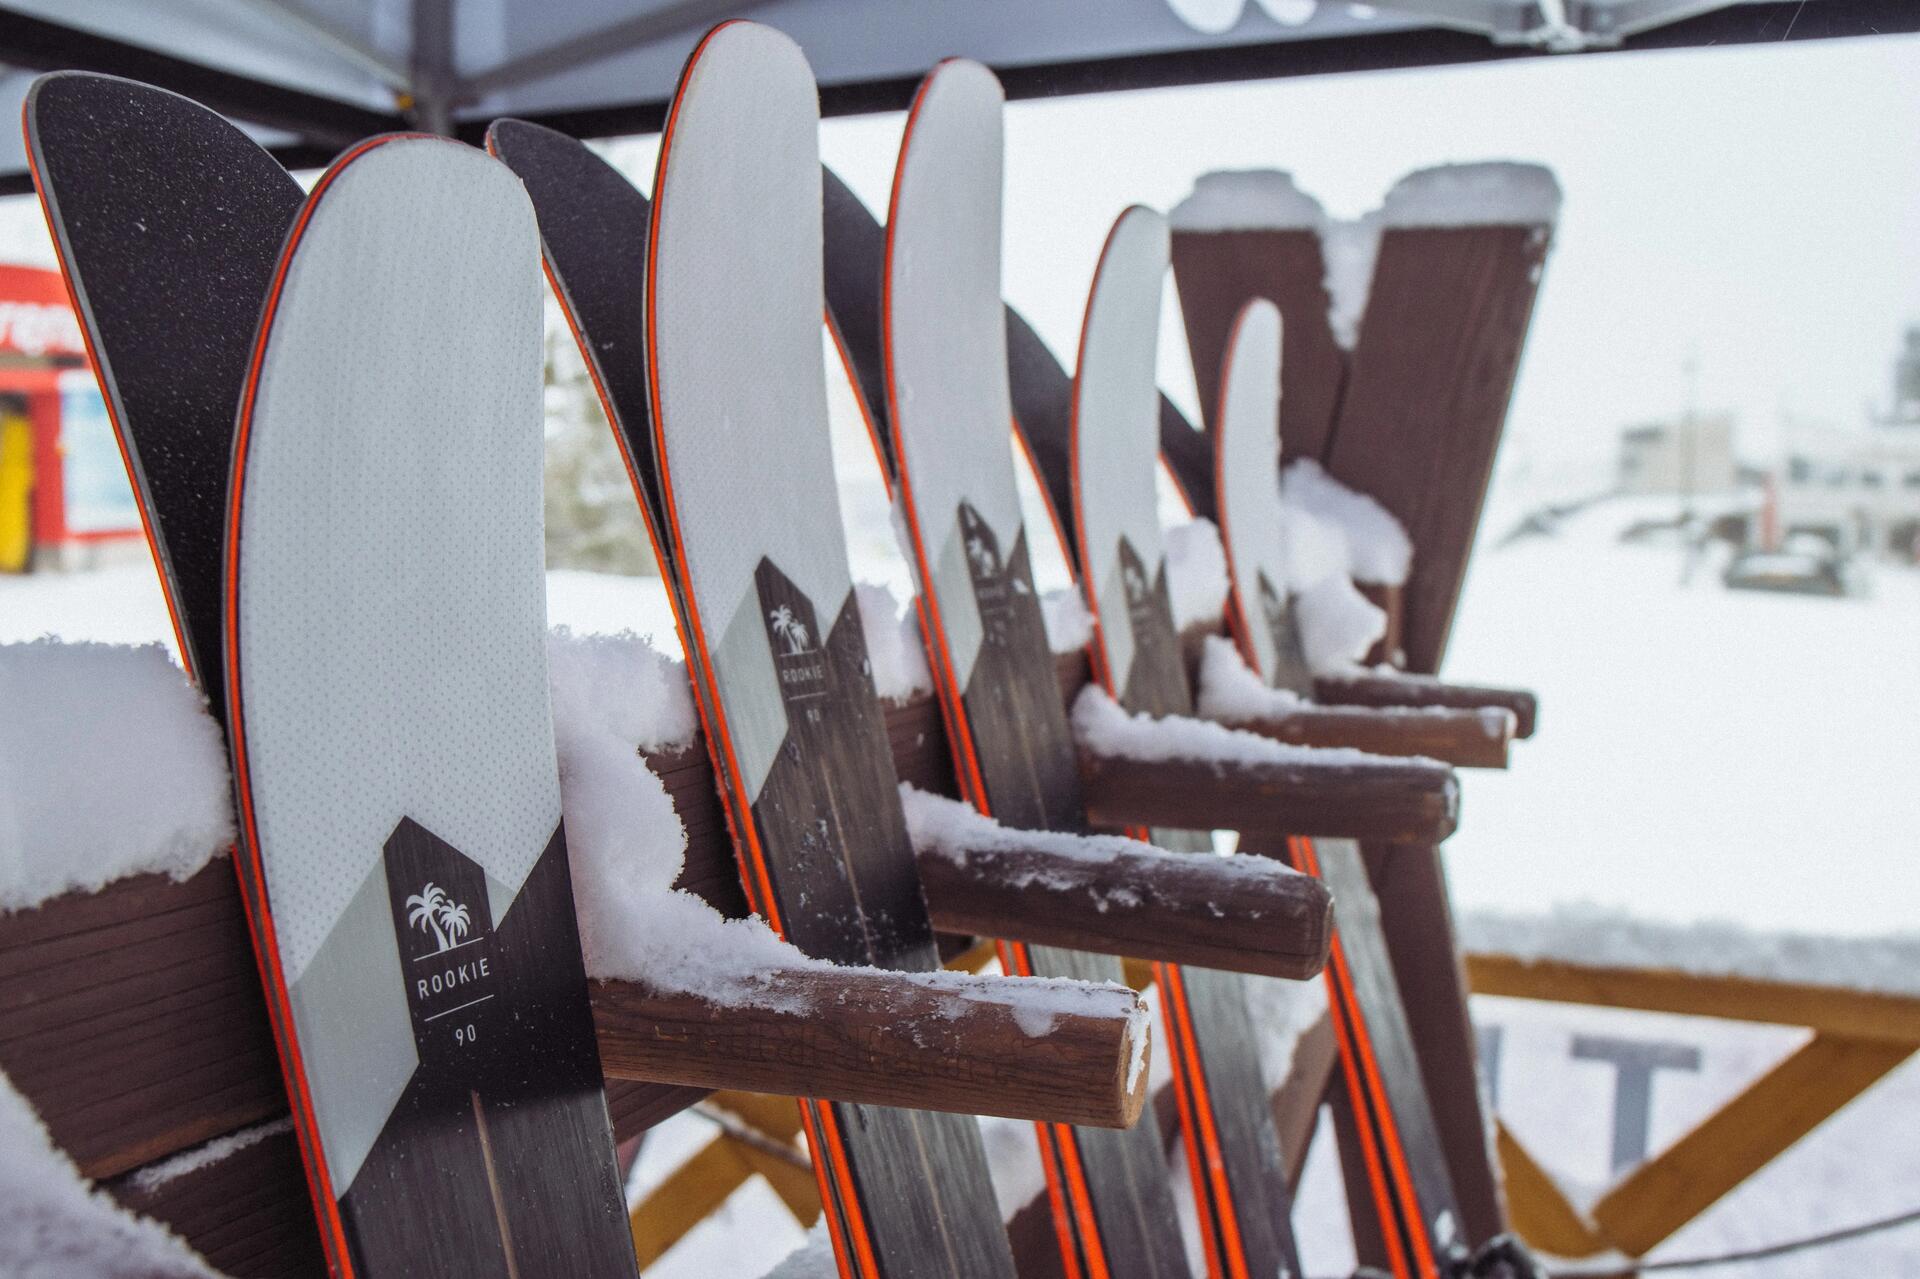 narty oparte o stojak w ośrodku narciarskim 